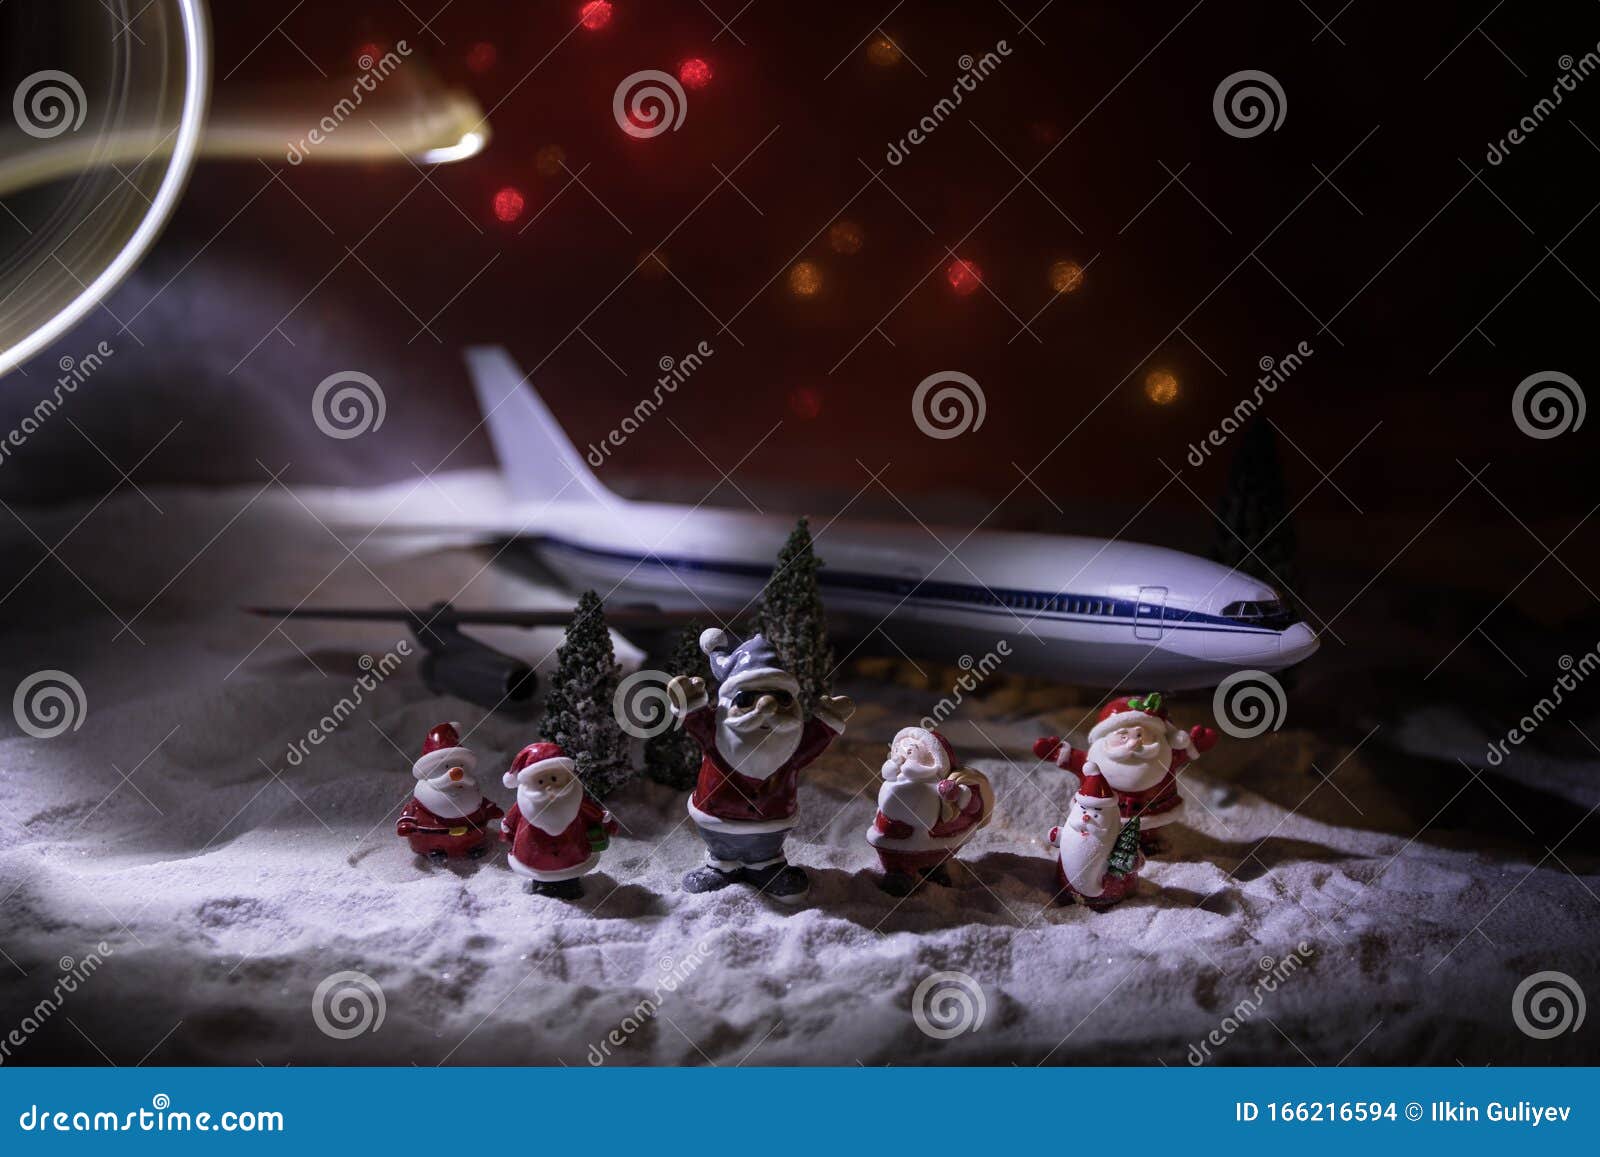 Feliz Natal E Feliz Ano Novo, Experiência Em Matéria De Viagens De Inverno  Em Madeira, Viajar Com Vista De Cima Do Avião Foto de Stock - Imagem de  agência, feriado: 166216594